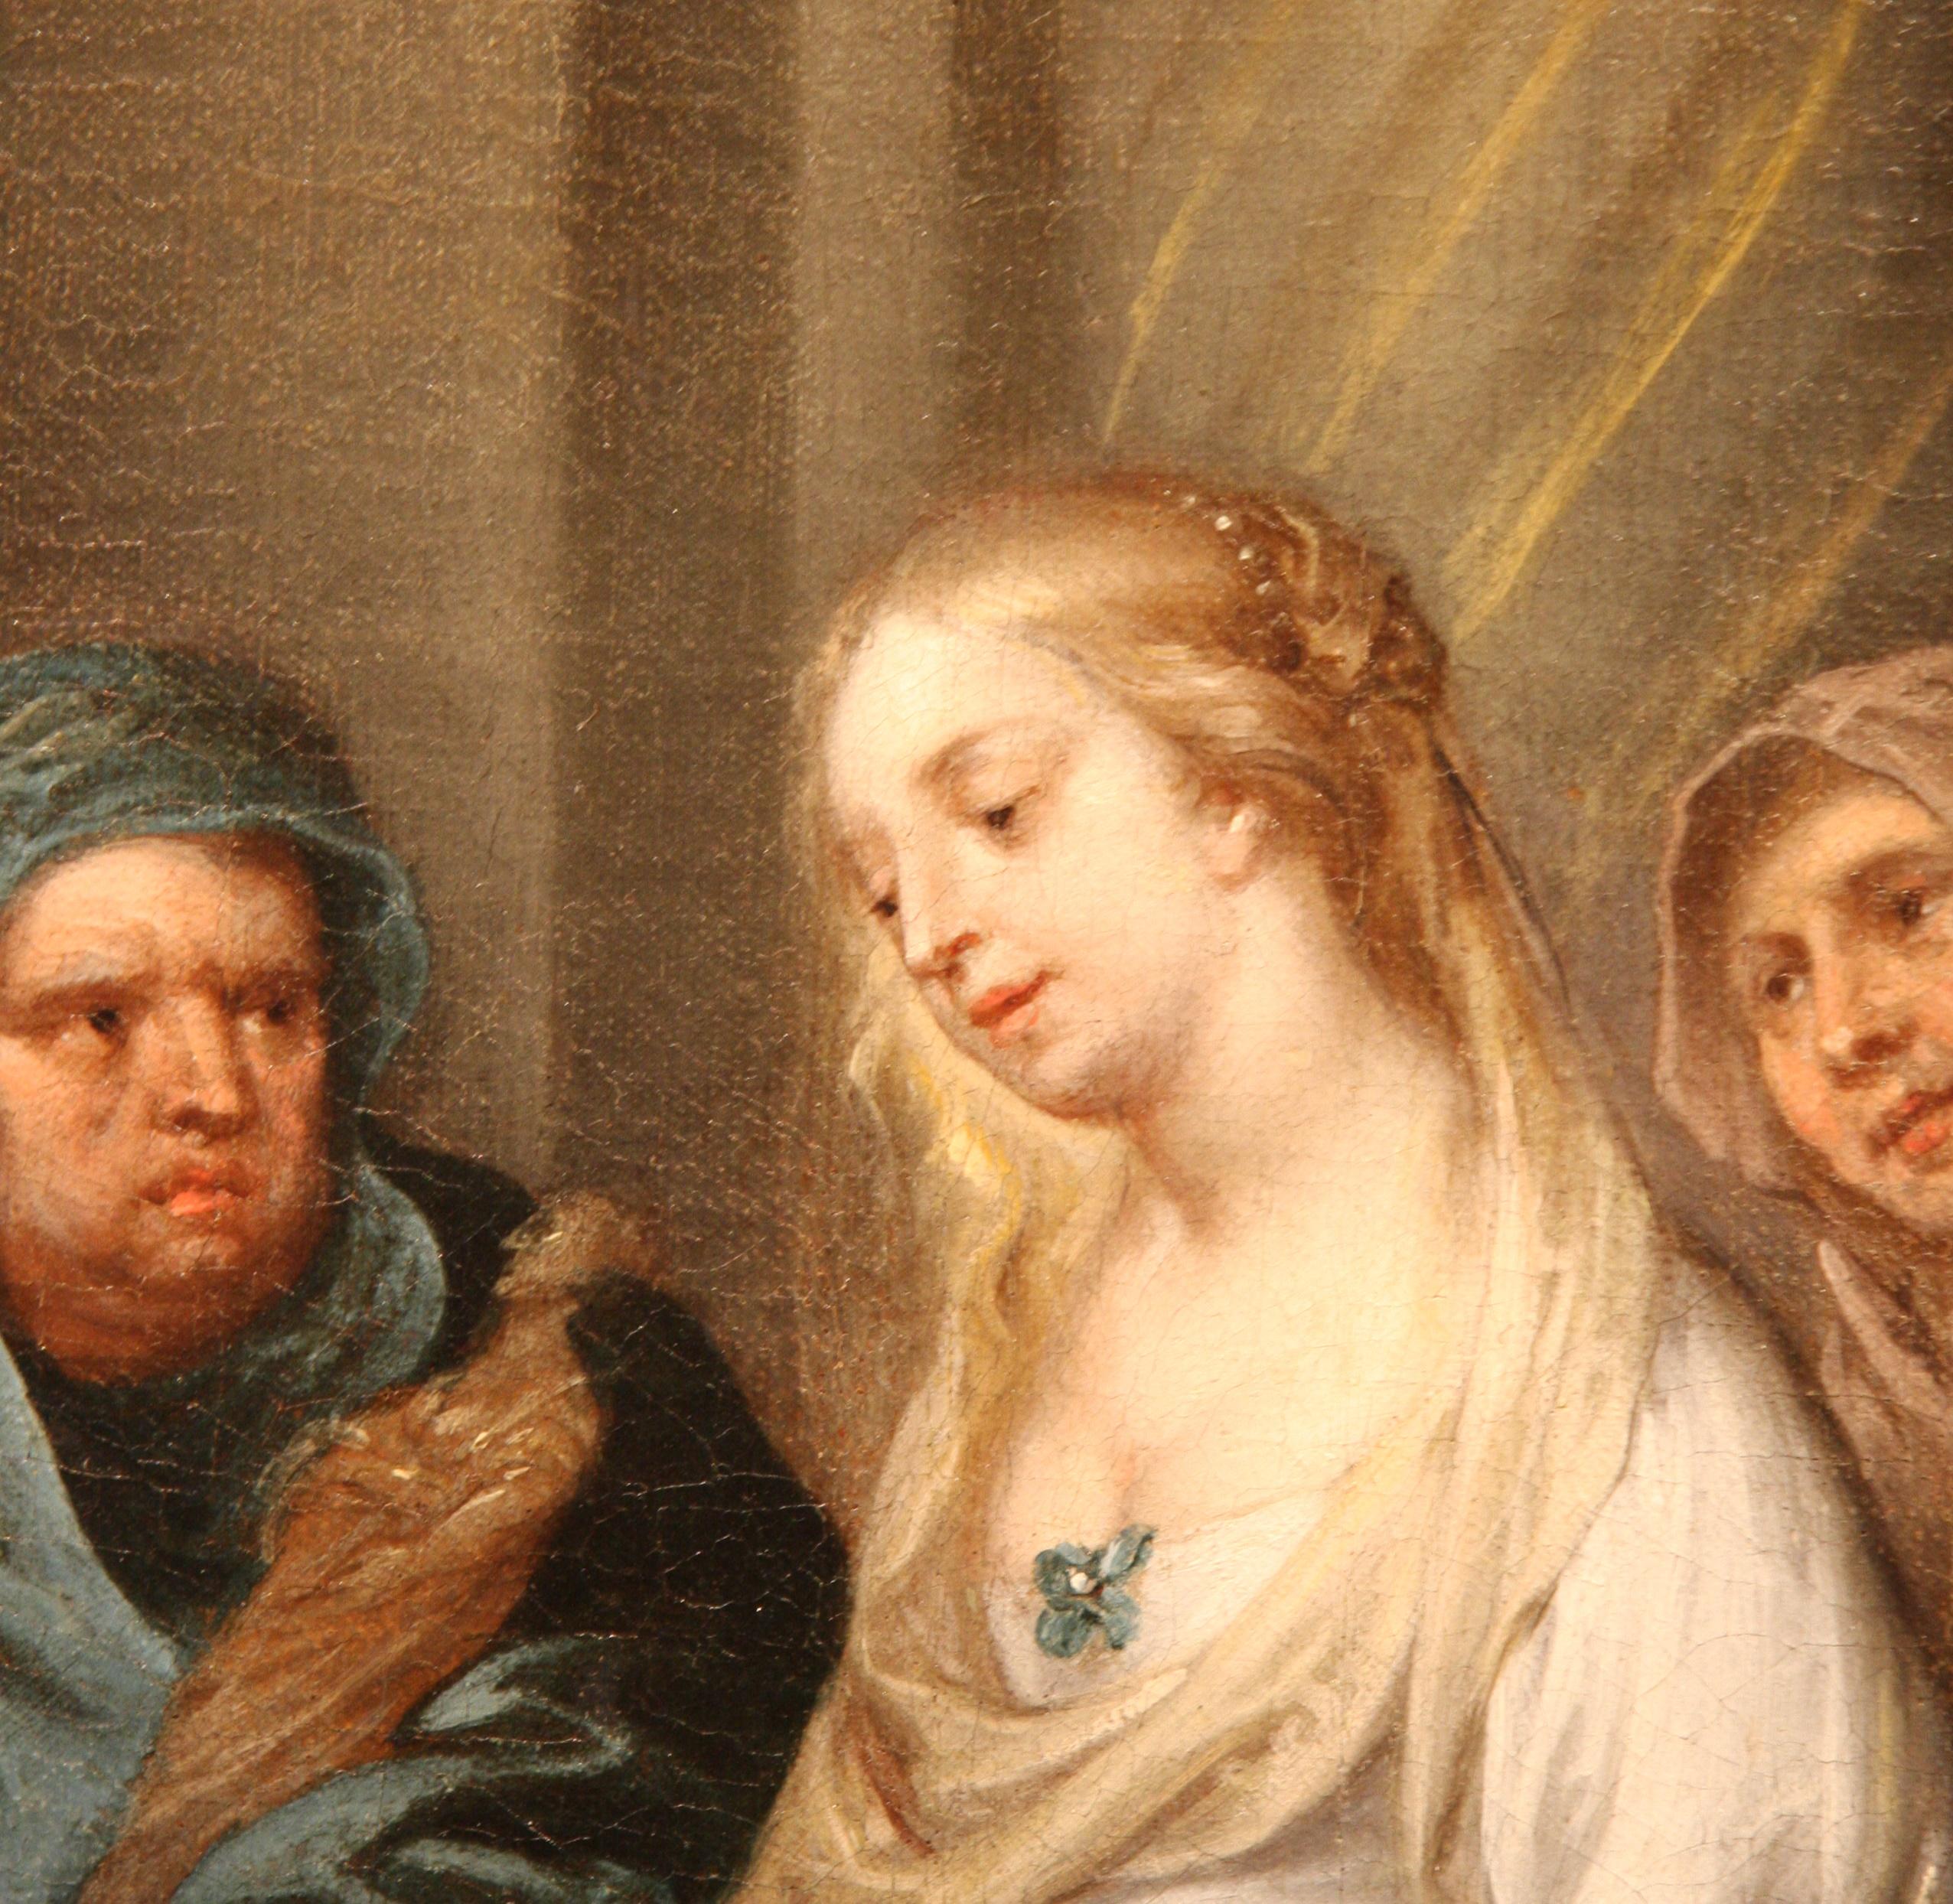 Kontinenz von Scipio, Erasmus Quellinus, Schule Rubens, Barockkunst, Alter Meister – Painting von Erasmus Quellinus the Younger